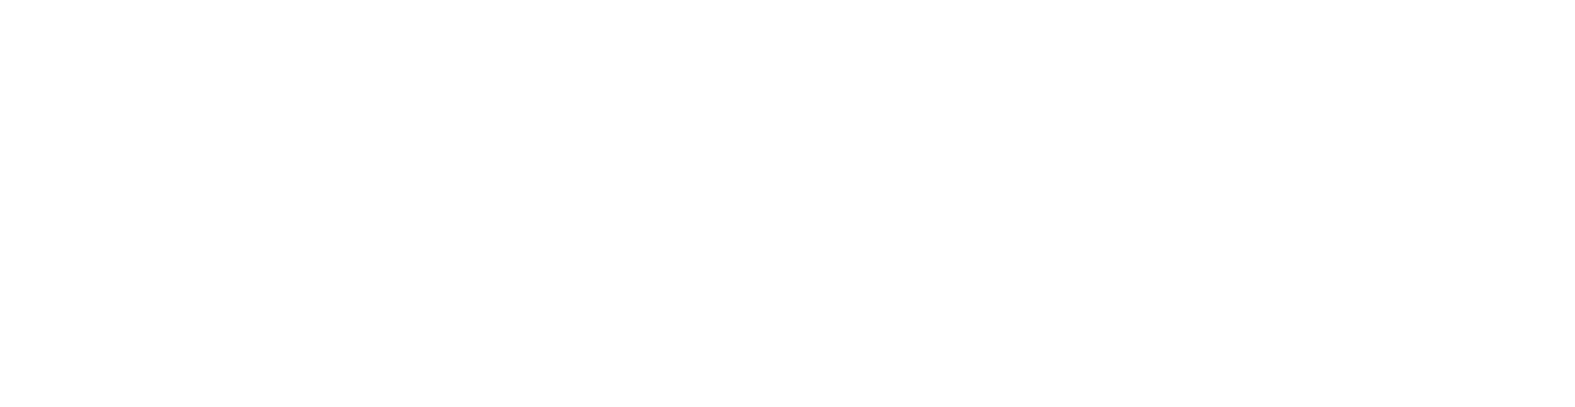 Castellum logo grand pour les fonds sombres (PNG transparent)